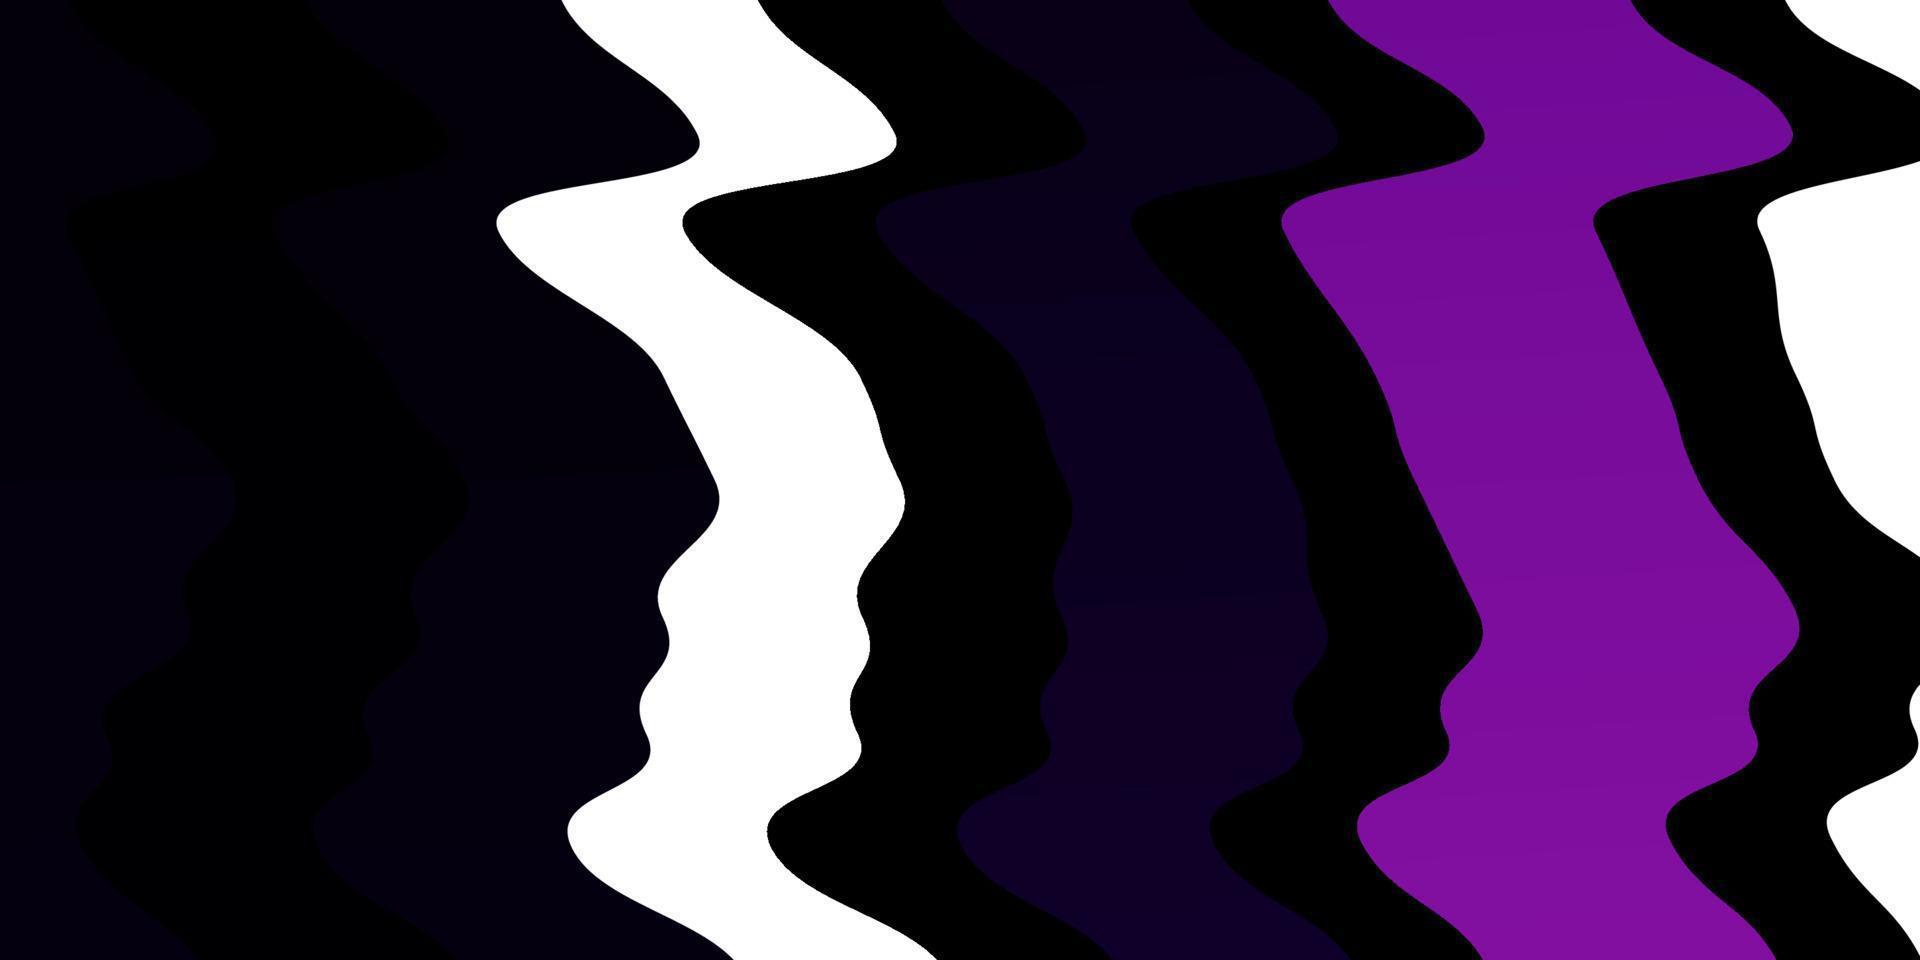 sfondo vettoriale viola scuro con curve.